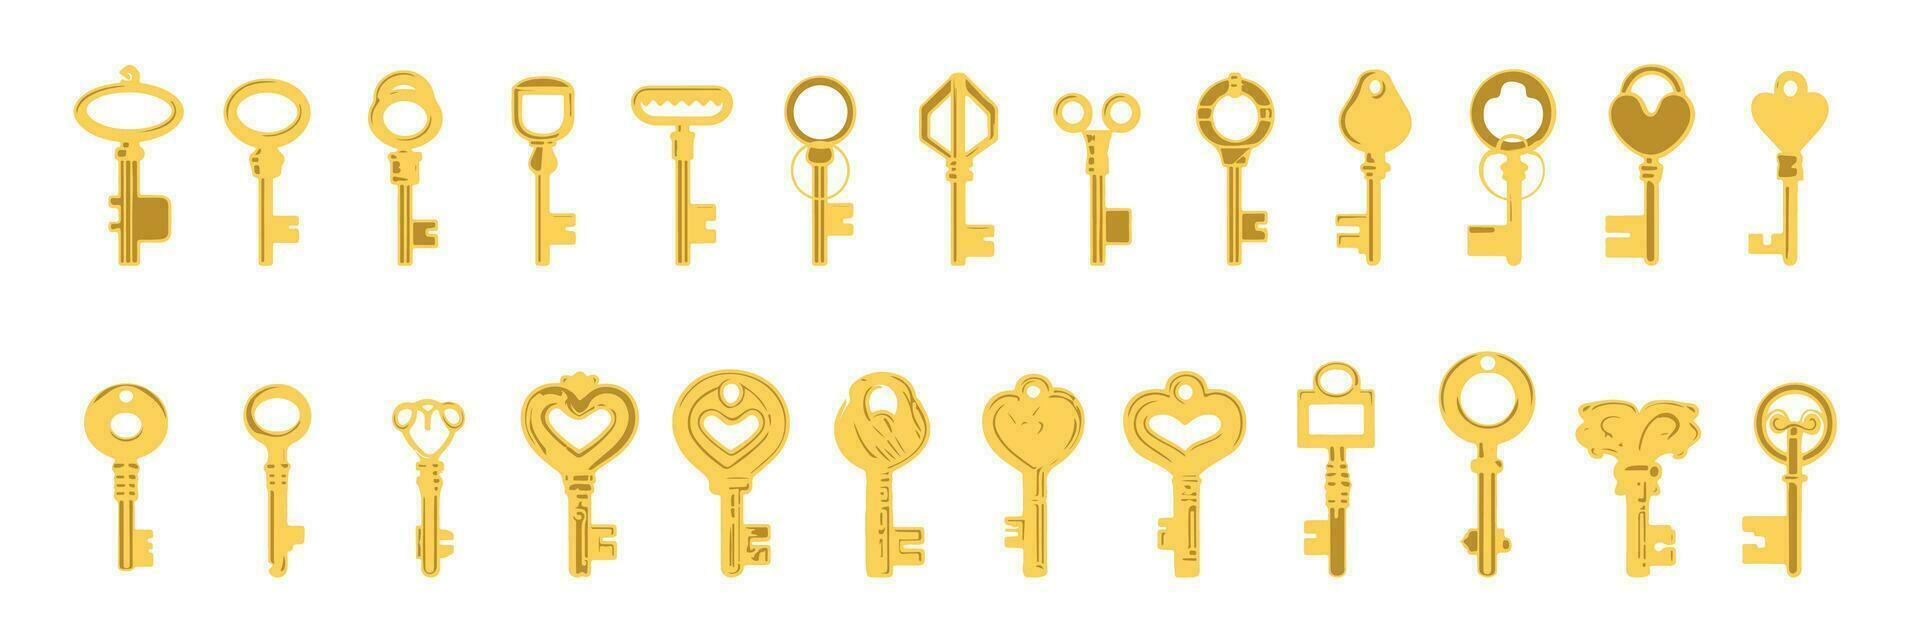 sleutels pictogrammen set, geïsoleerd. sluitend en opening deuren. goud sleutels tekens en symbolen verzameling. vergrendeling en ontgrendelen deuren wijnoogst sleutels pictogram, vector illustratie.